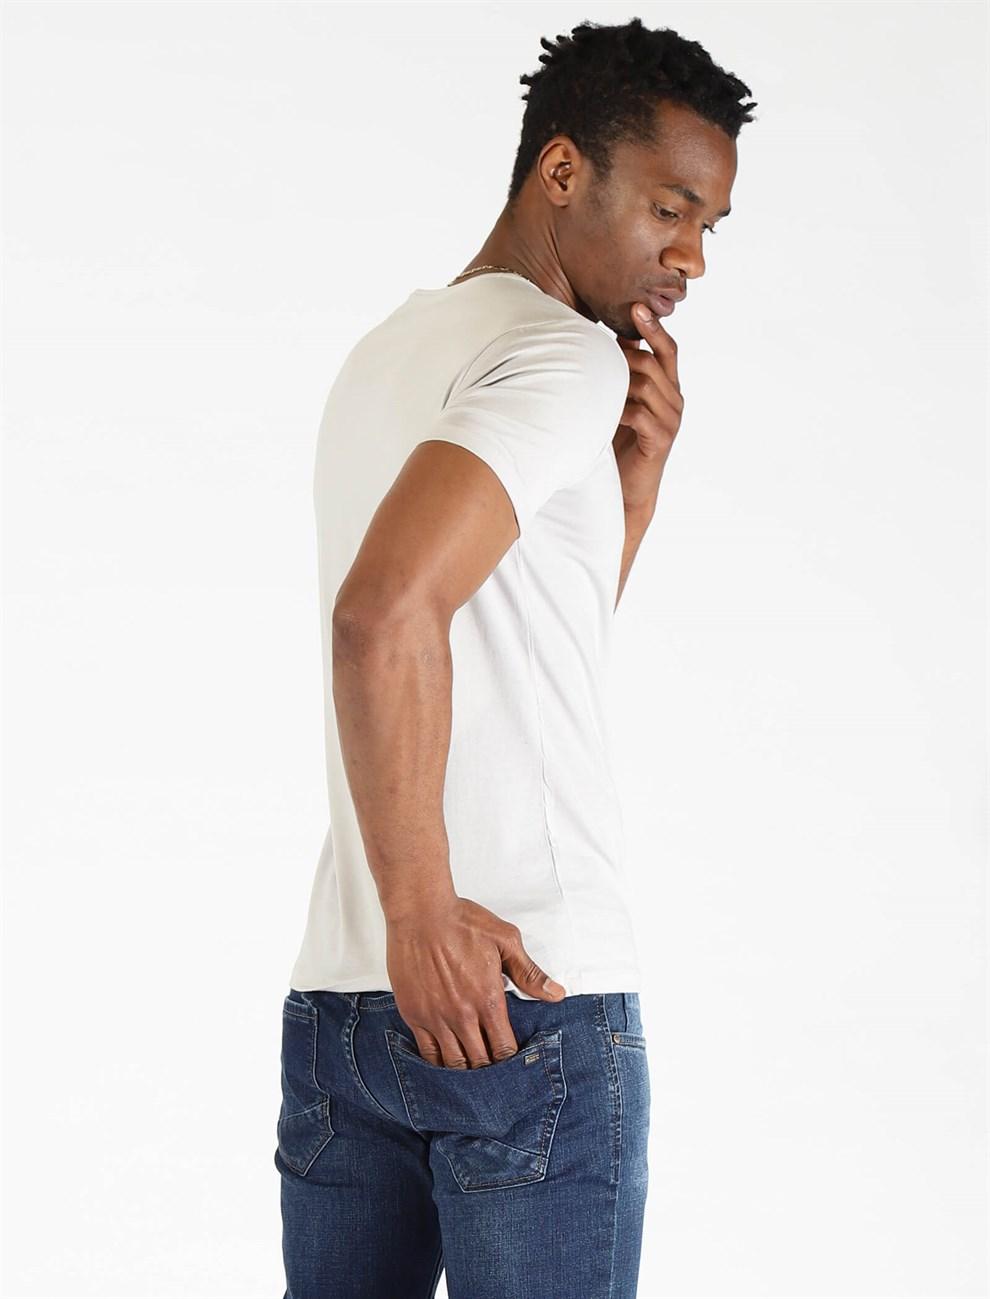 Twister Jeans erkek slım fıt ets 1827 36.94 TL + KDV